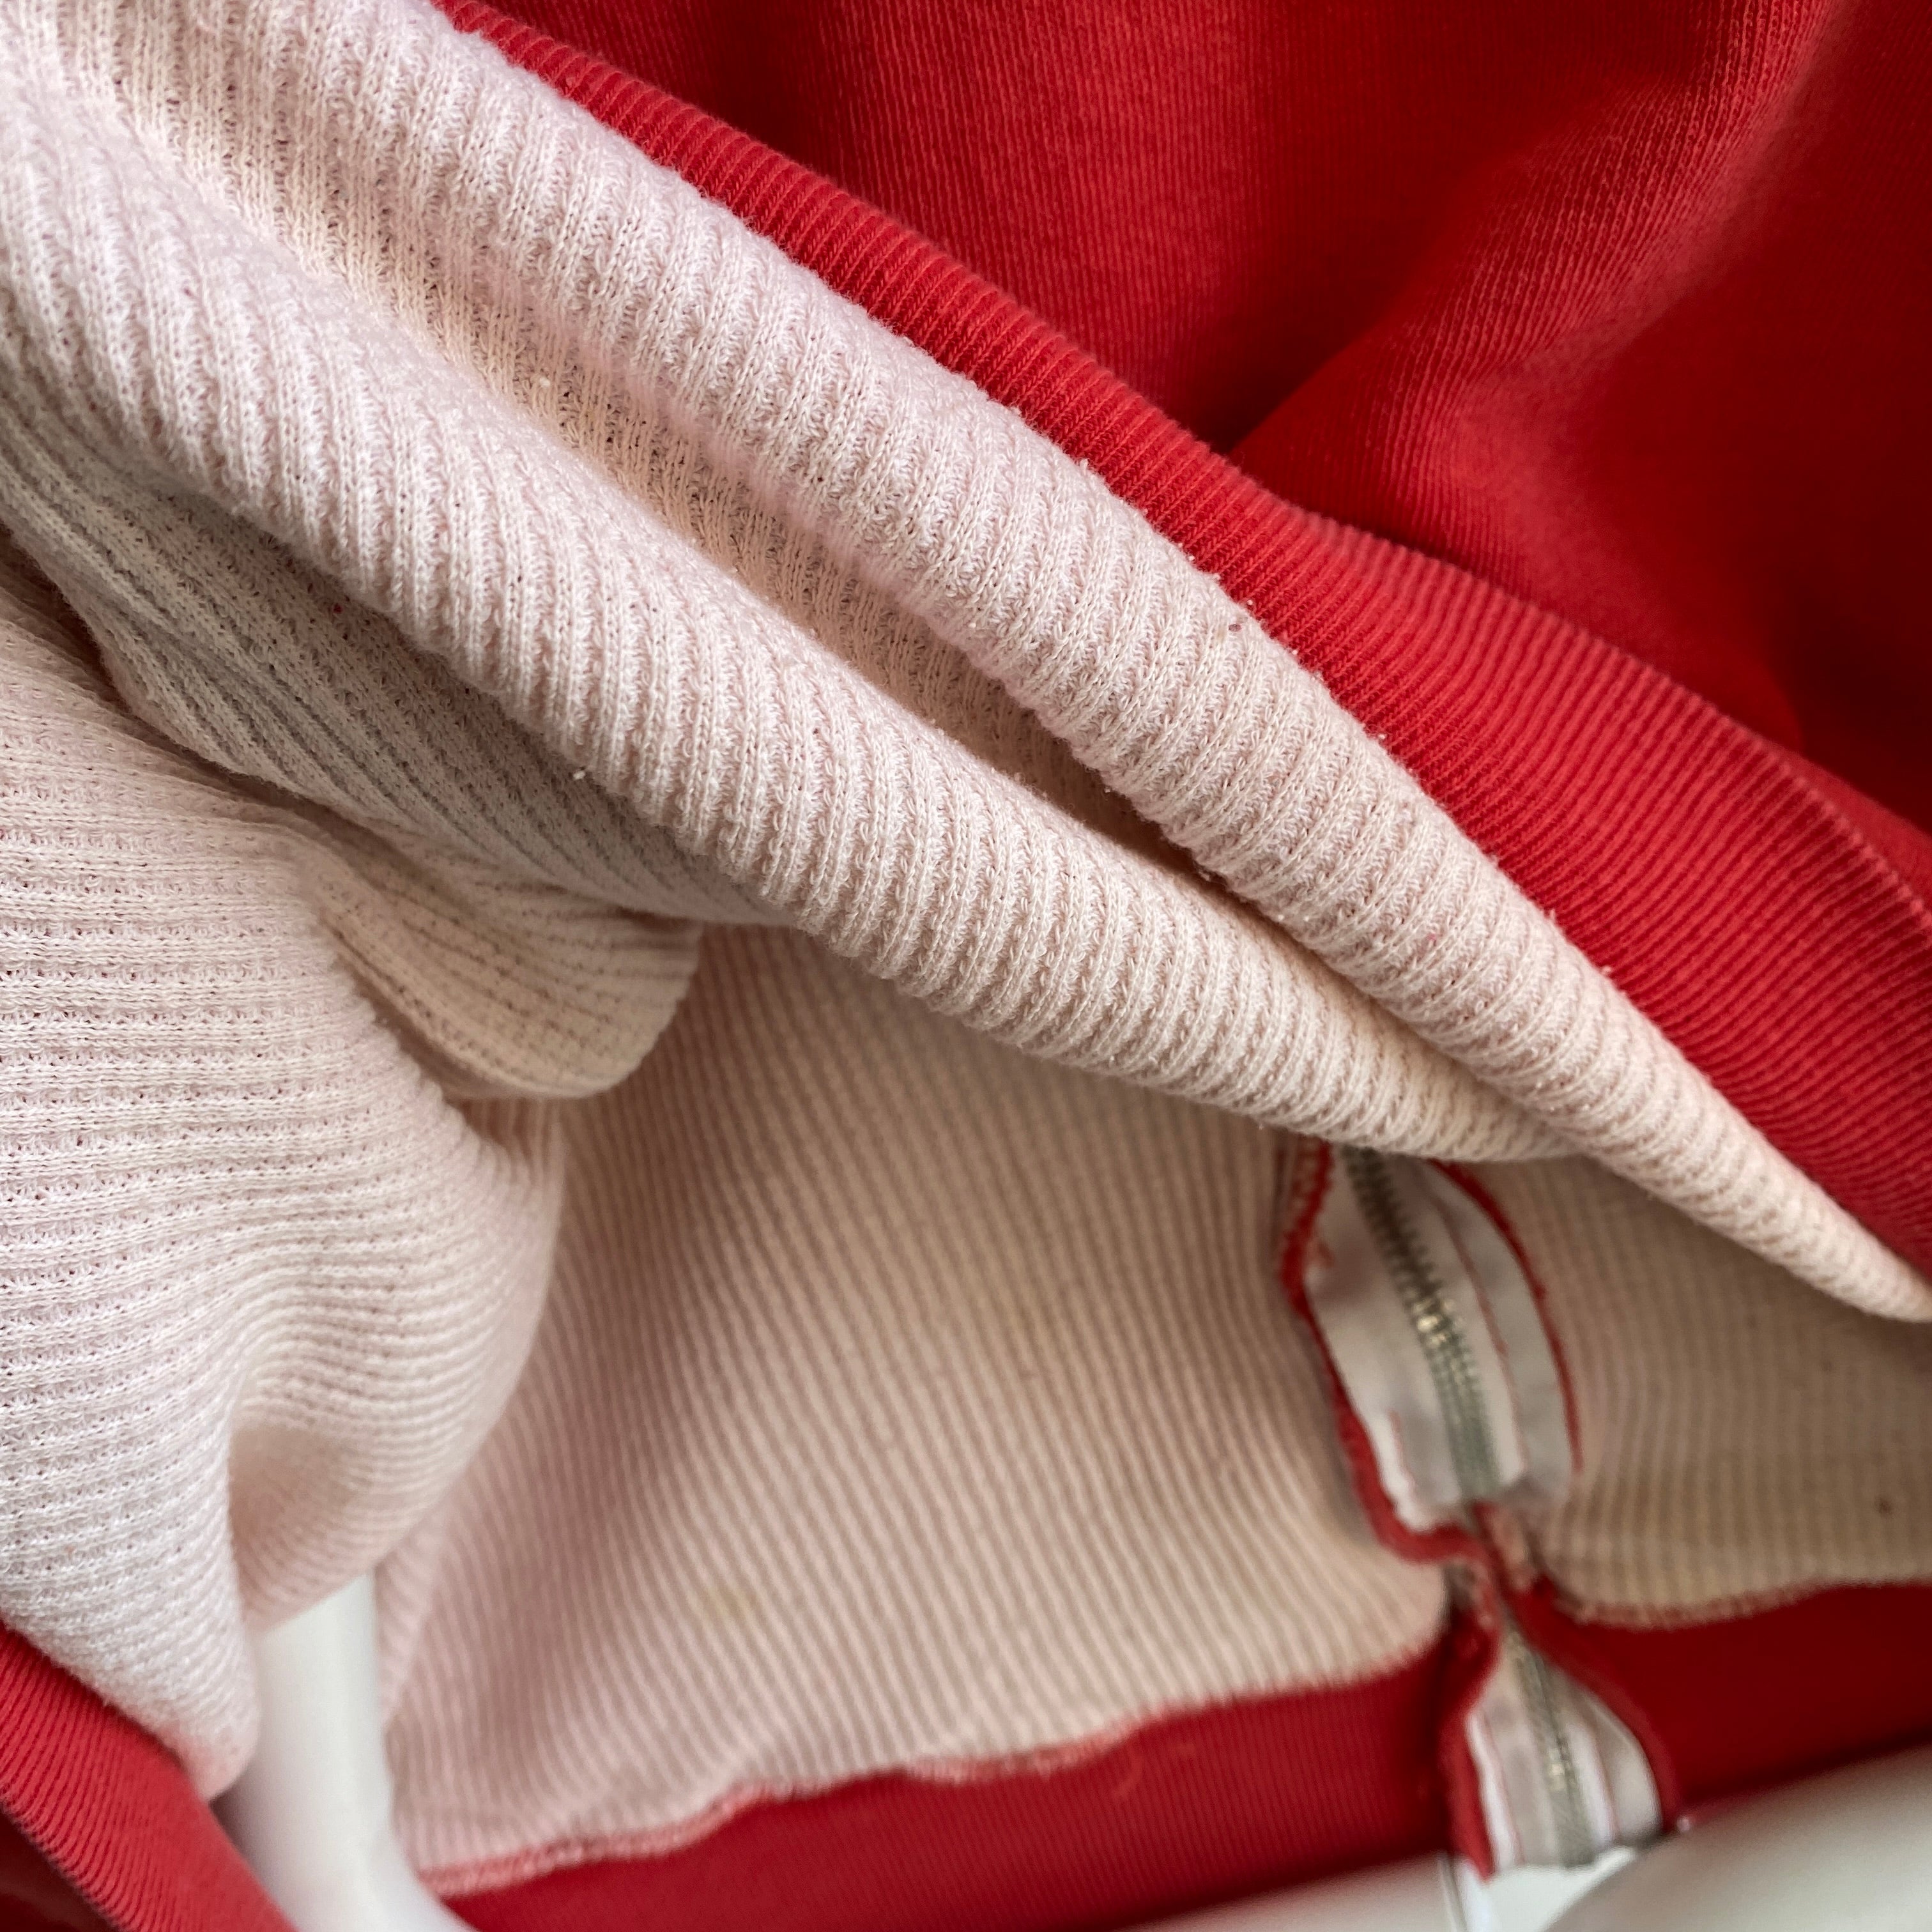 Sweat à capuche zippé isolé rouge des années 1970/80 avec une fermeture éclair contrastante